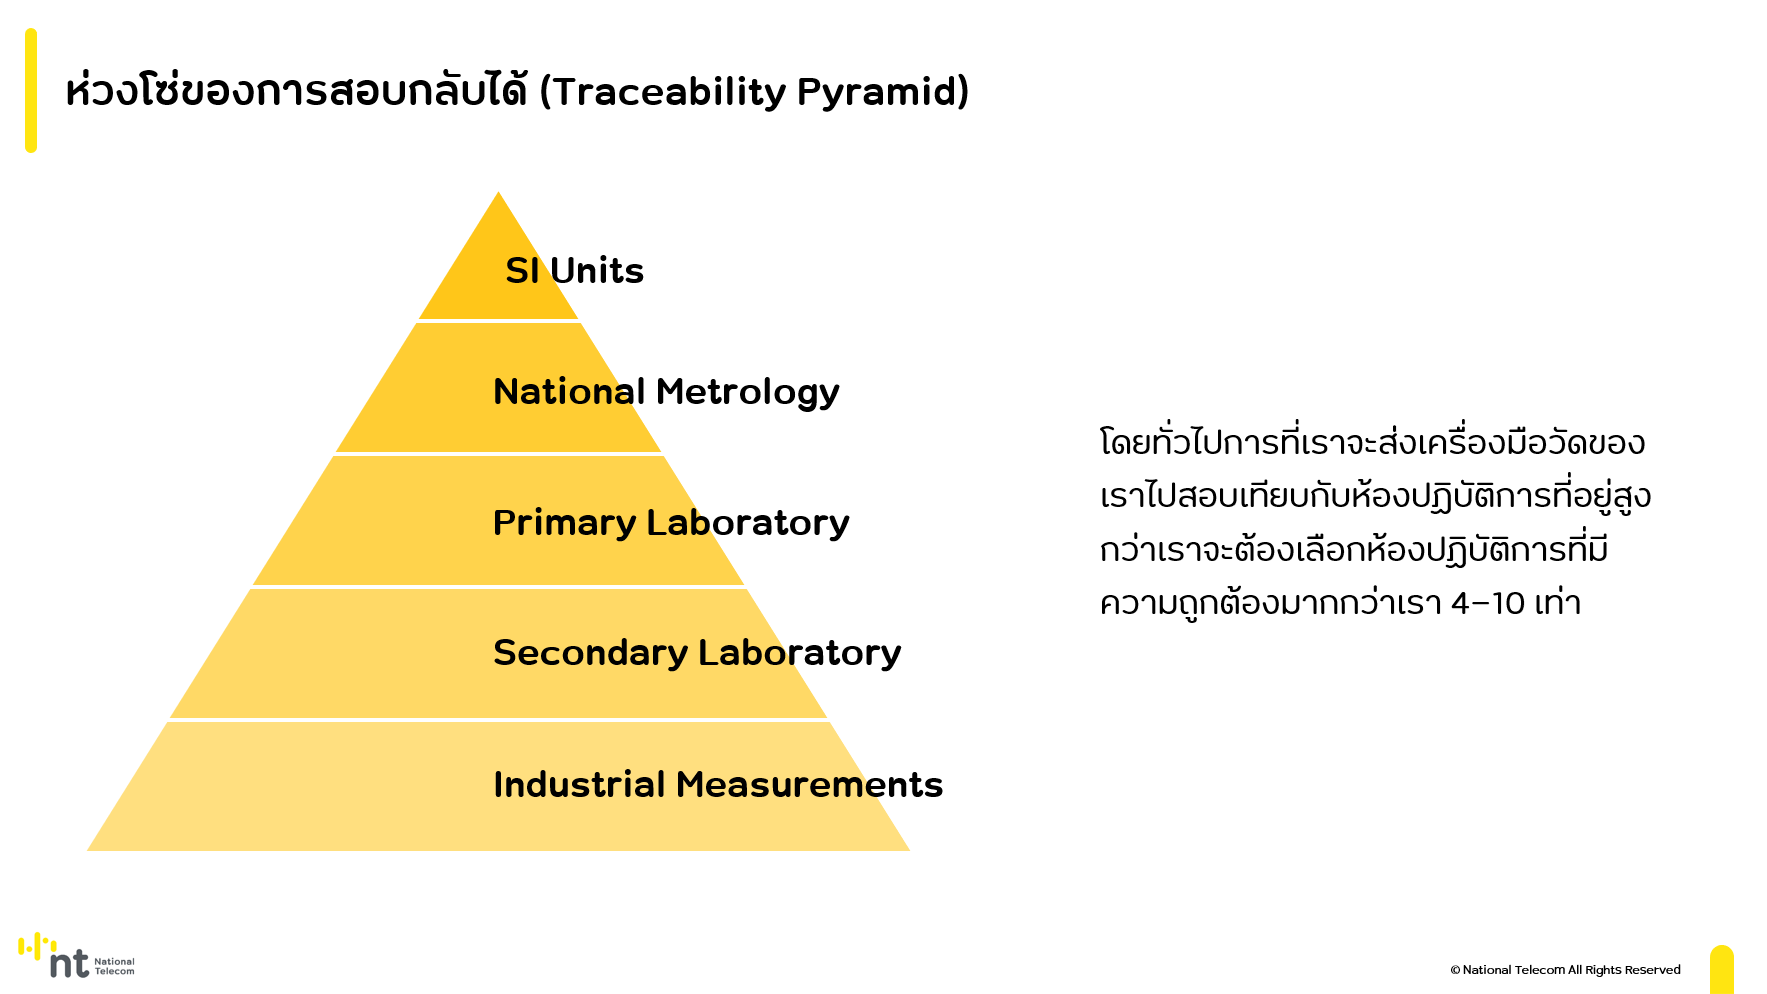 Traceability pyramid